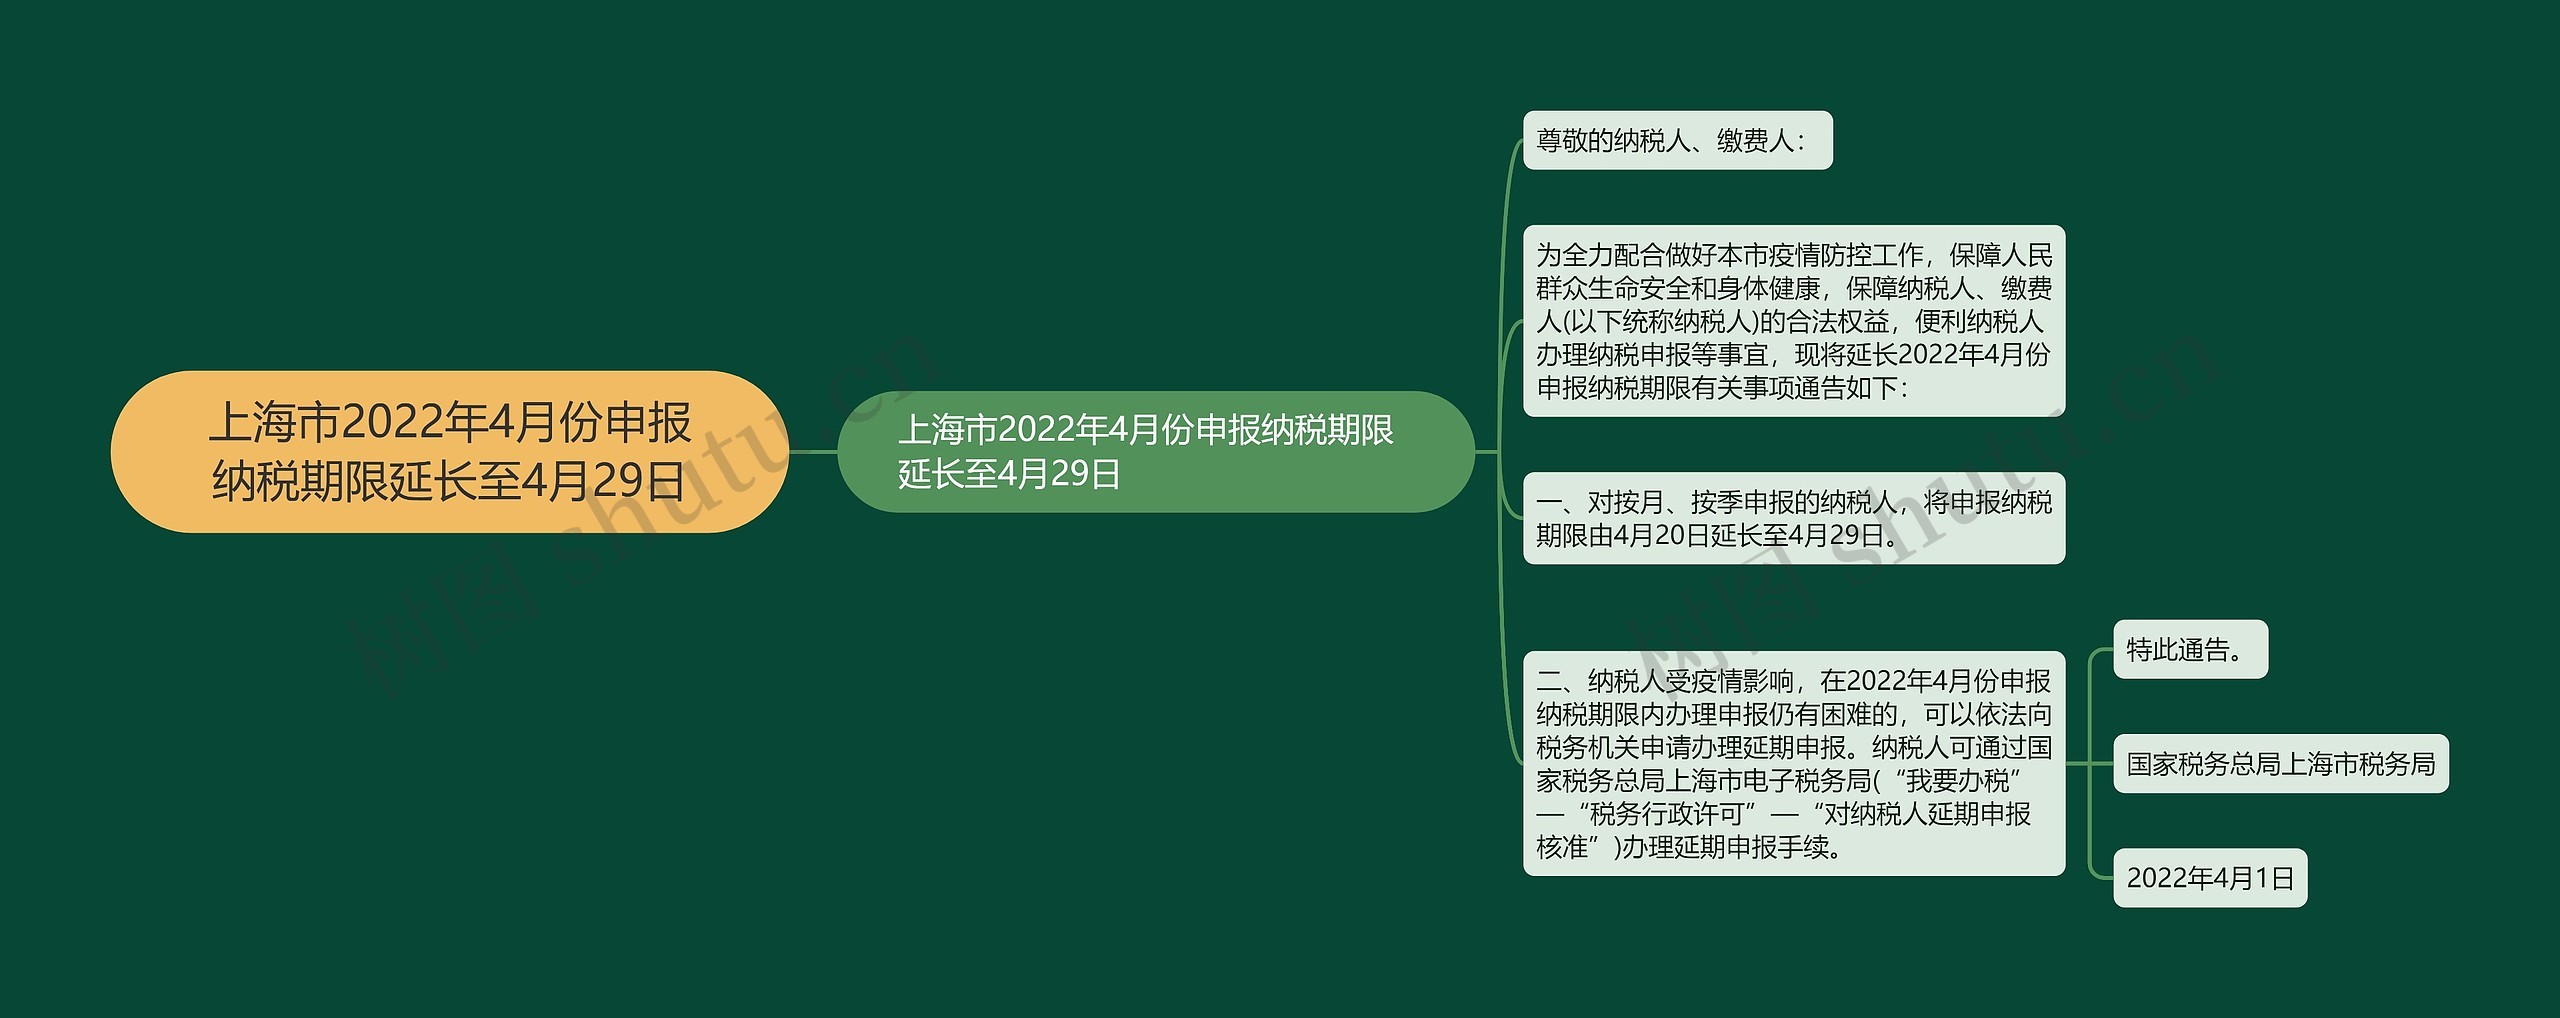 上海市2022年4月份申报纳税期限延长至4月29日思维导图